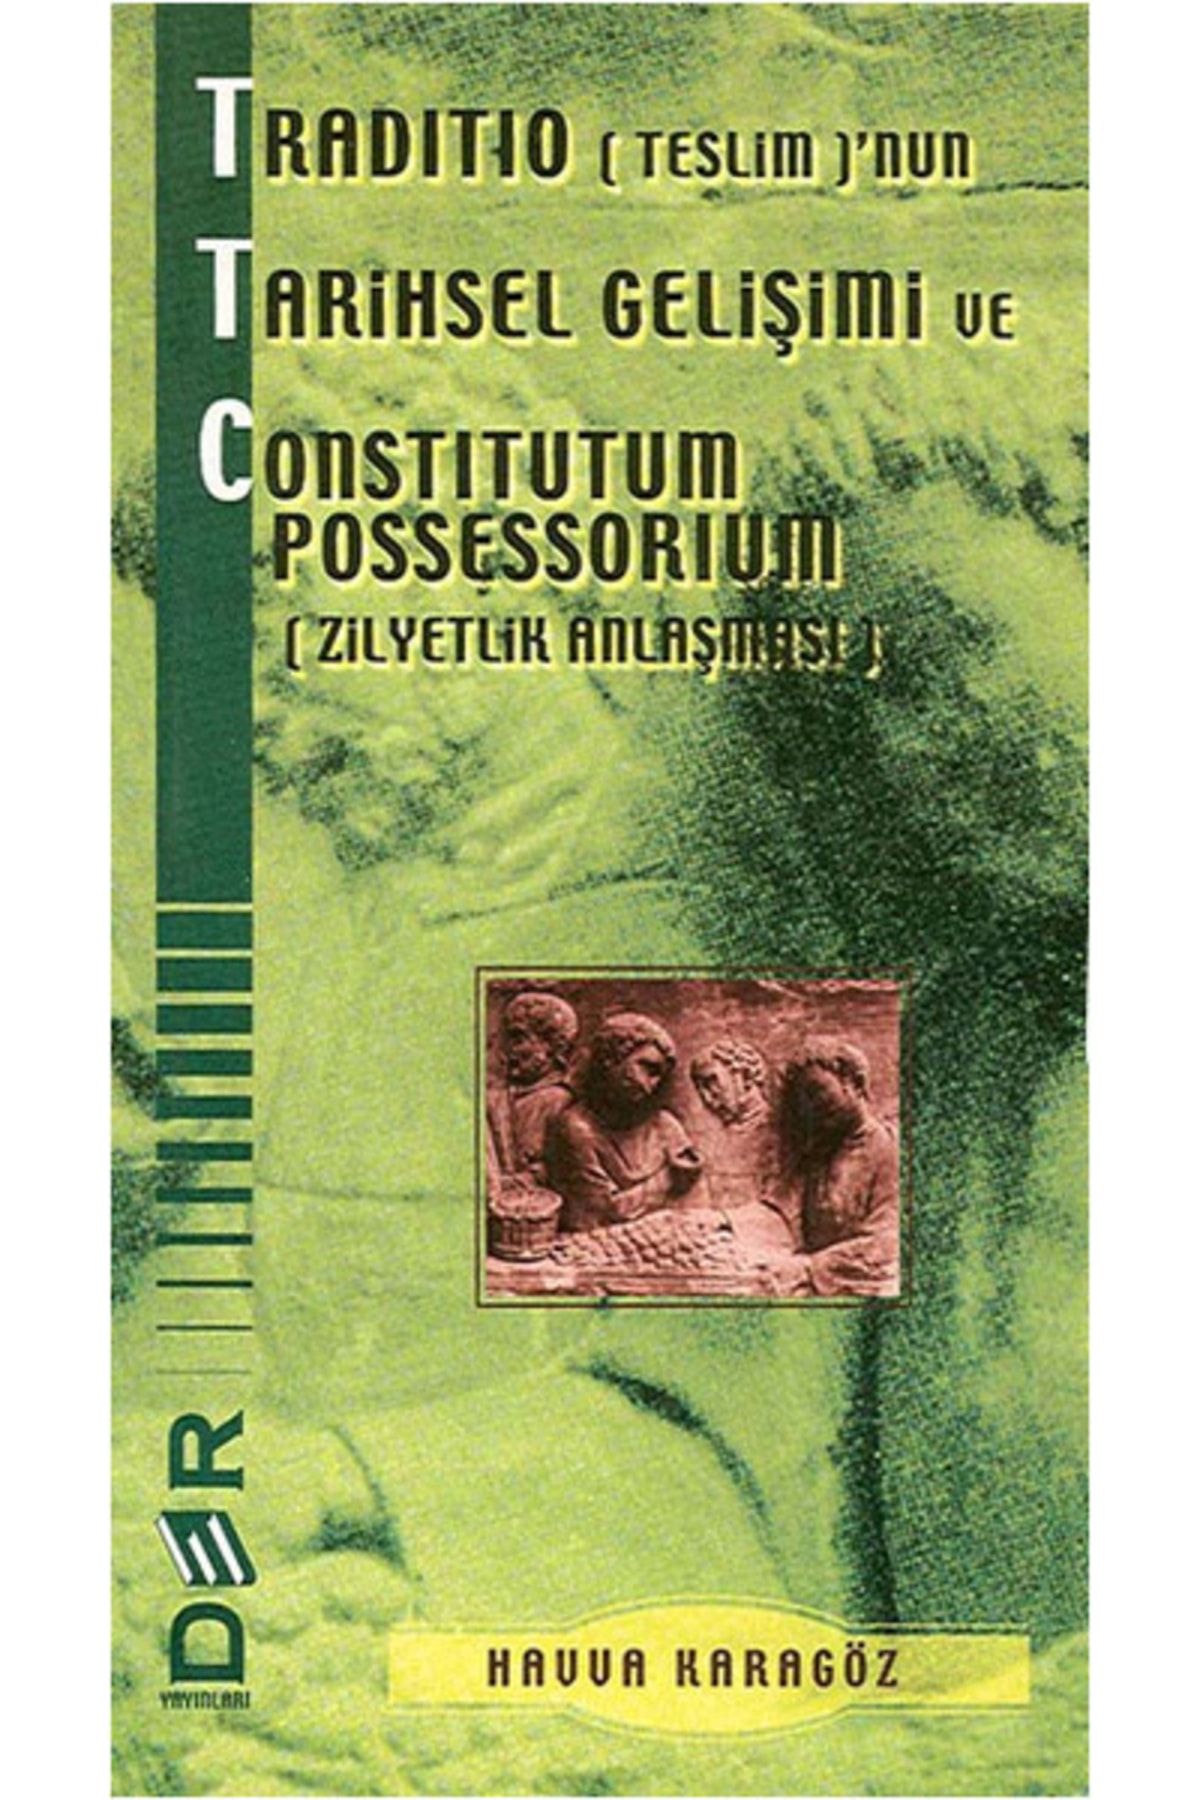 Der Yayınları Traditio (teslim)'nun Tarihsel Gelişimi Ve Constitutum Possessorium (zilyetlik